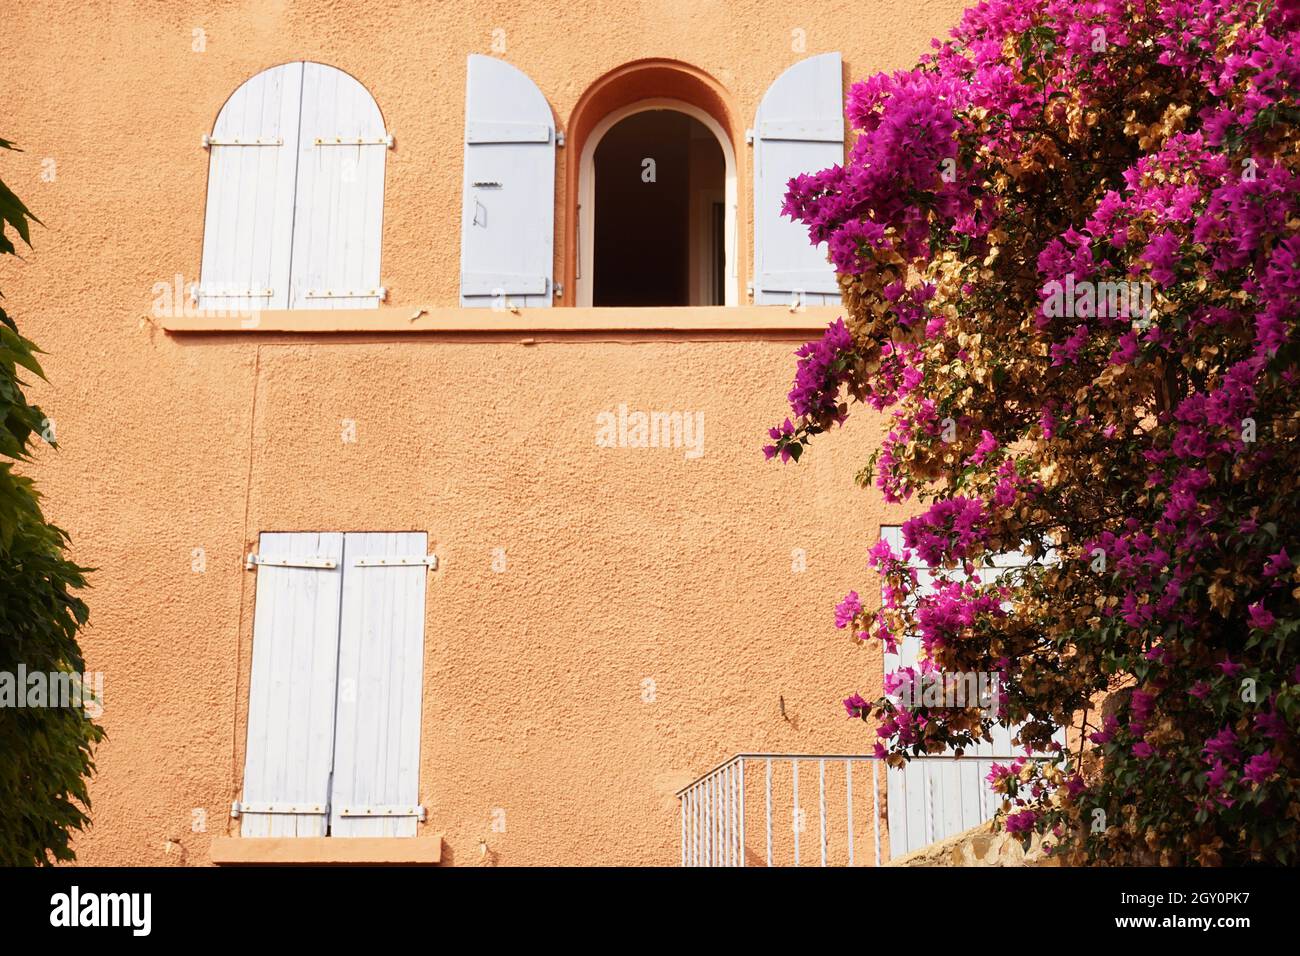 Casa di colore luminoso fronte adornato con pianta in fiore nel villaggio di mare mediterraneo di Collioure nel sud della Francia Foto Stock